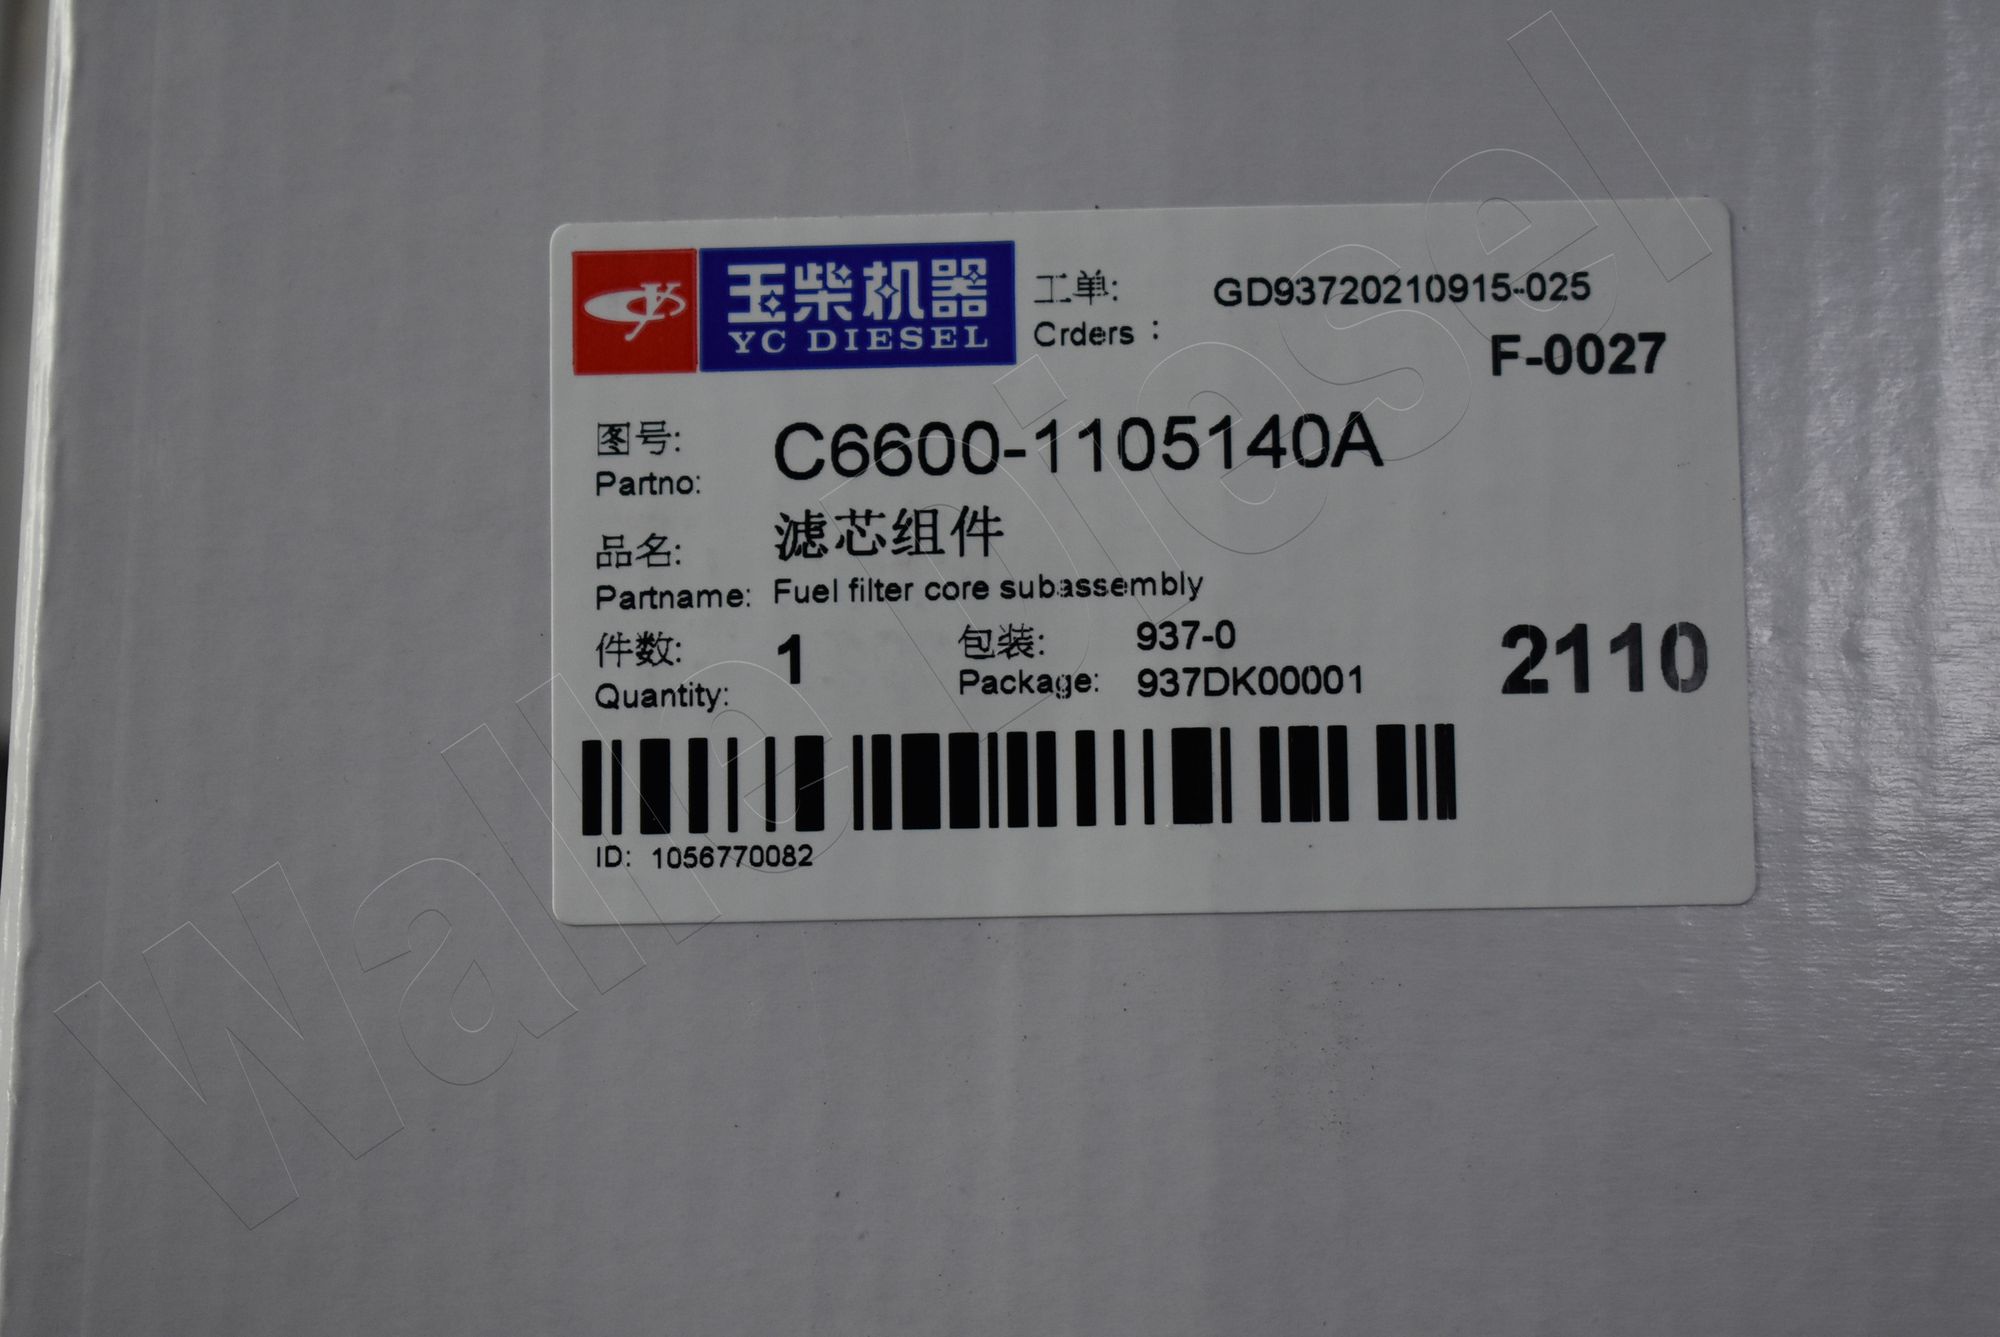 C6600-1105140A - Fuel Filter